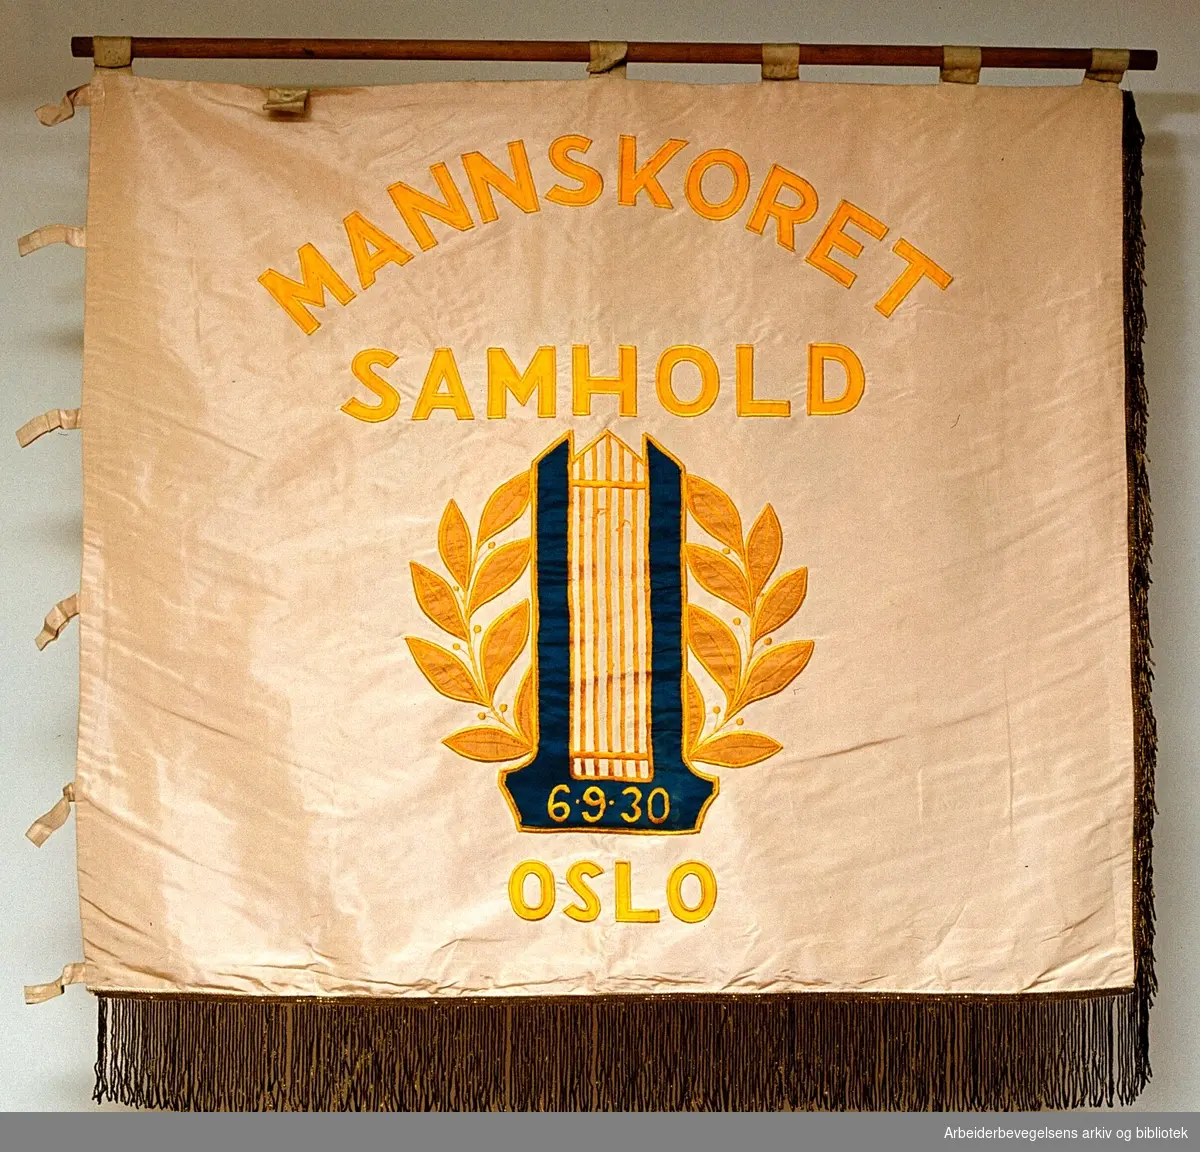 Mannskoret samhold, Oslo..Forside..Fanetekst: Mannskoret Samhold Oslo 6.9.30..